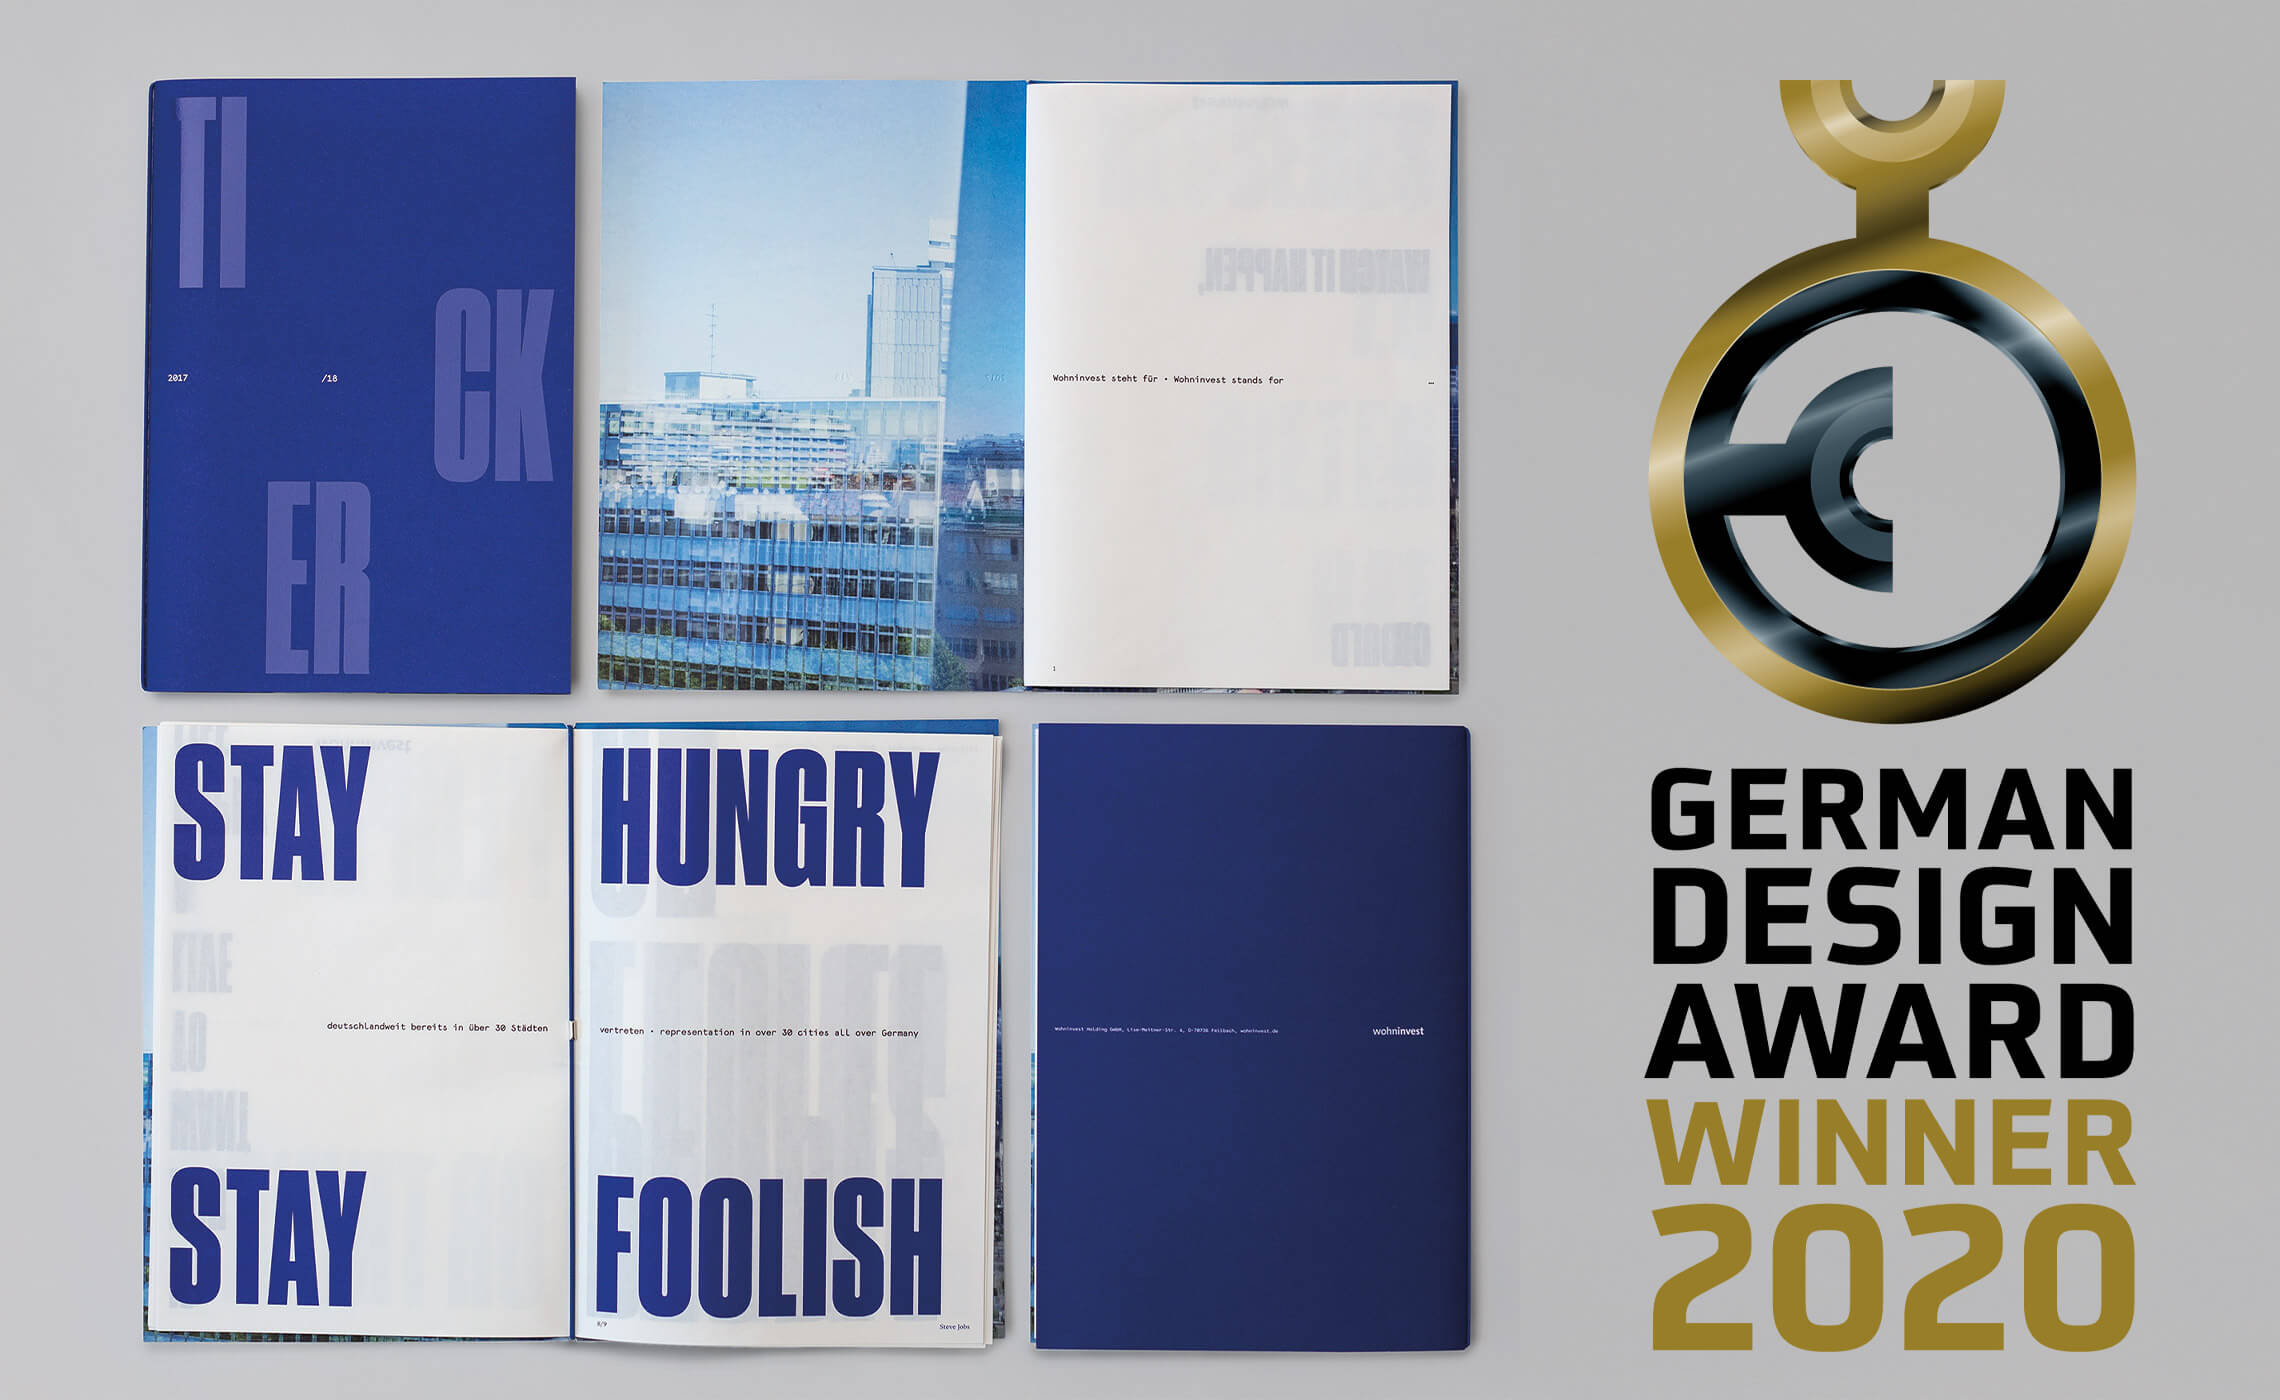 Dieses Bild zeigt die Wohninvest Imagebroschüre aufgeklappt und als aufgefaltetes Poster mit dem Logo des German Design Awards.